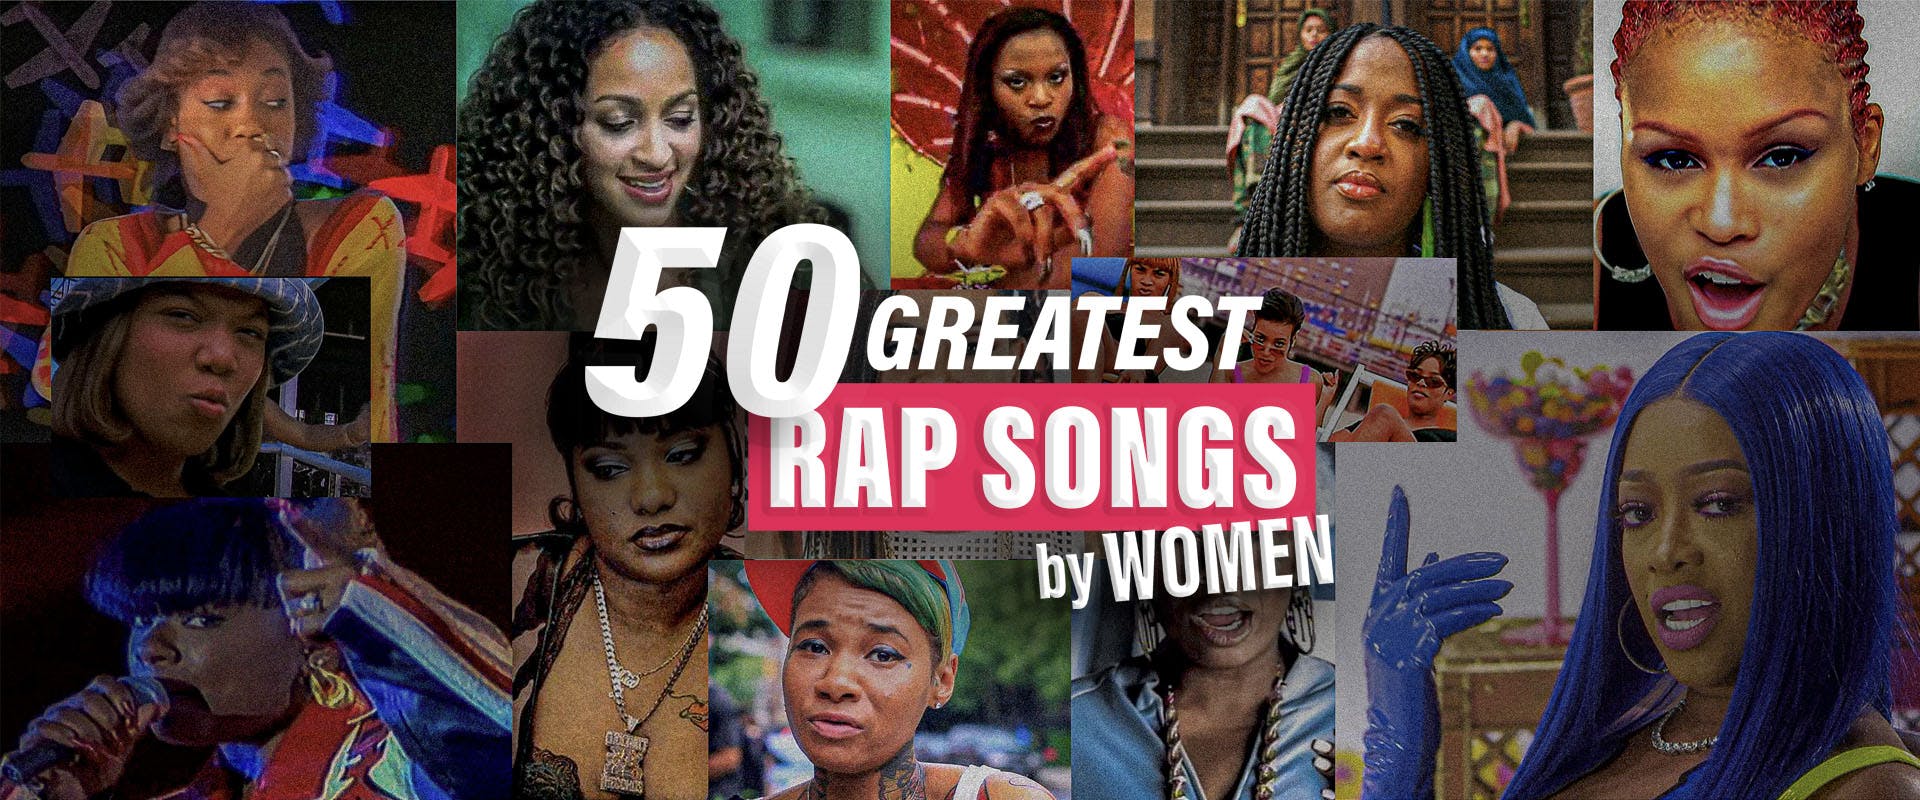 The 50 Greatest Rap Songs By Women